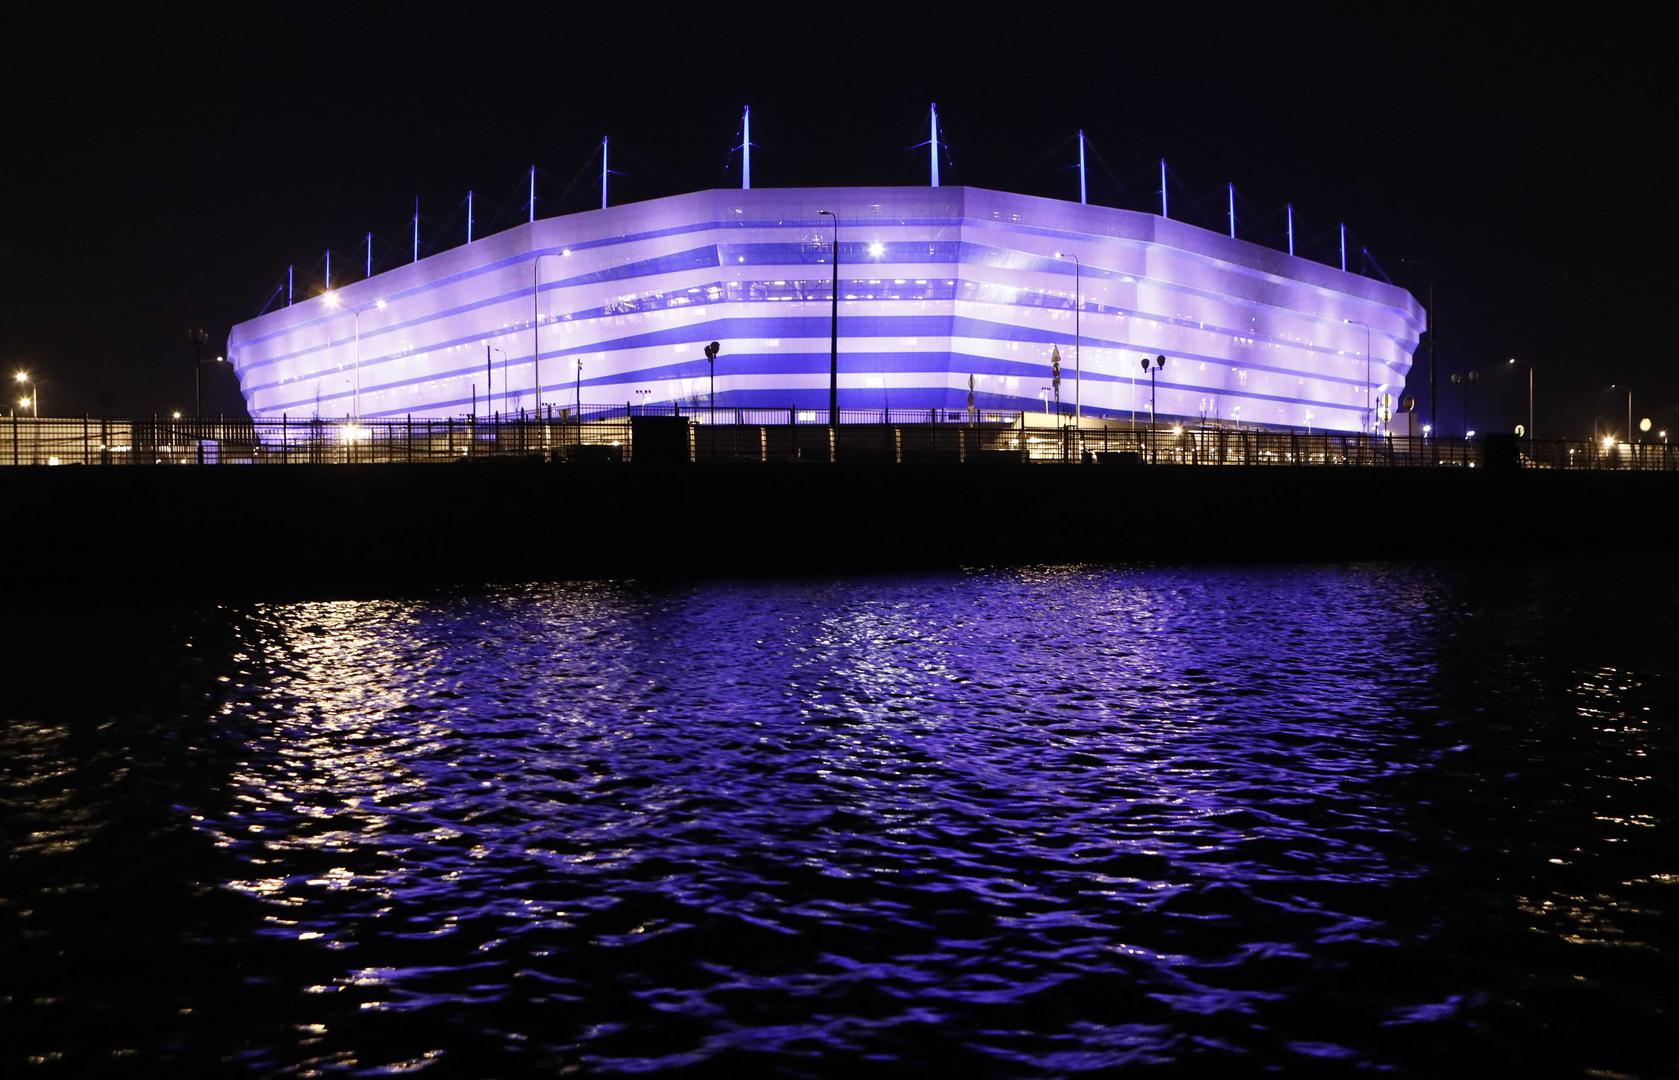 Hrvatska će Svjetsko prvenstvo u Rusiji otvoriti protiv Nigerije 16. lipnja na stadionu u Kalinjingradu.

